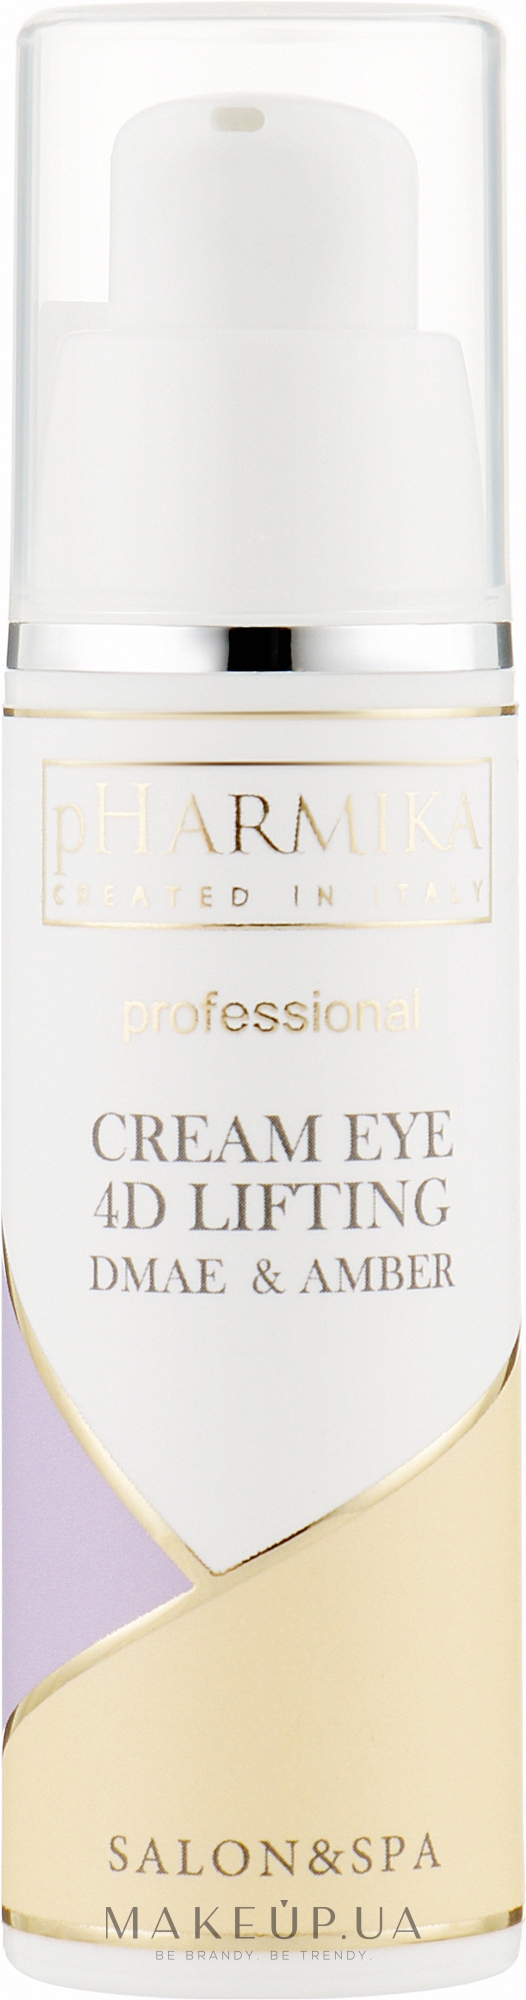 Крем під очі "4D ліфтинг" - pHarmika Cream Eye 4 D Lifting Dmае & Amber — фото 30ml